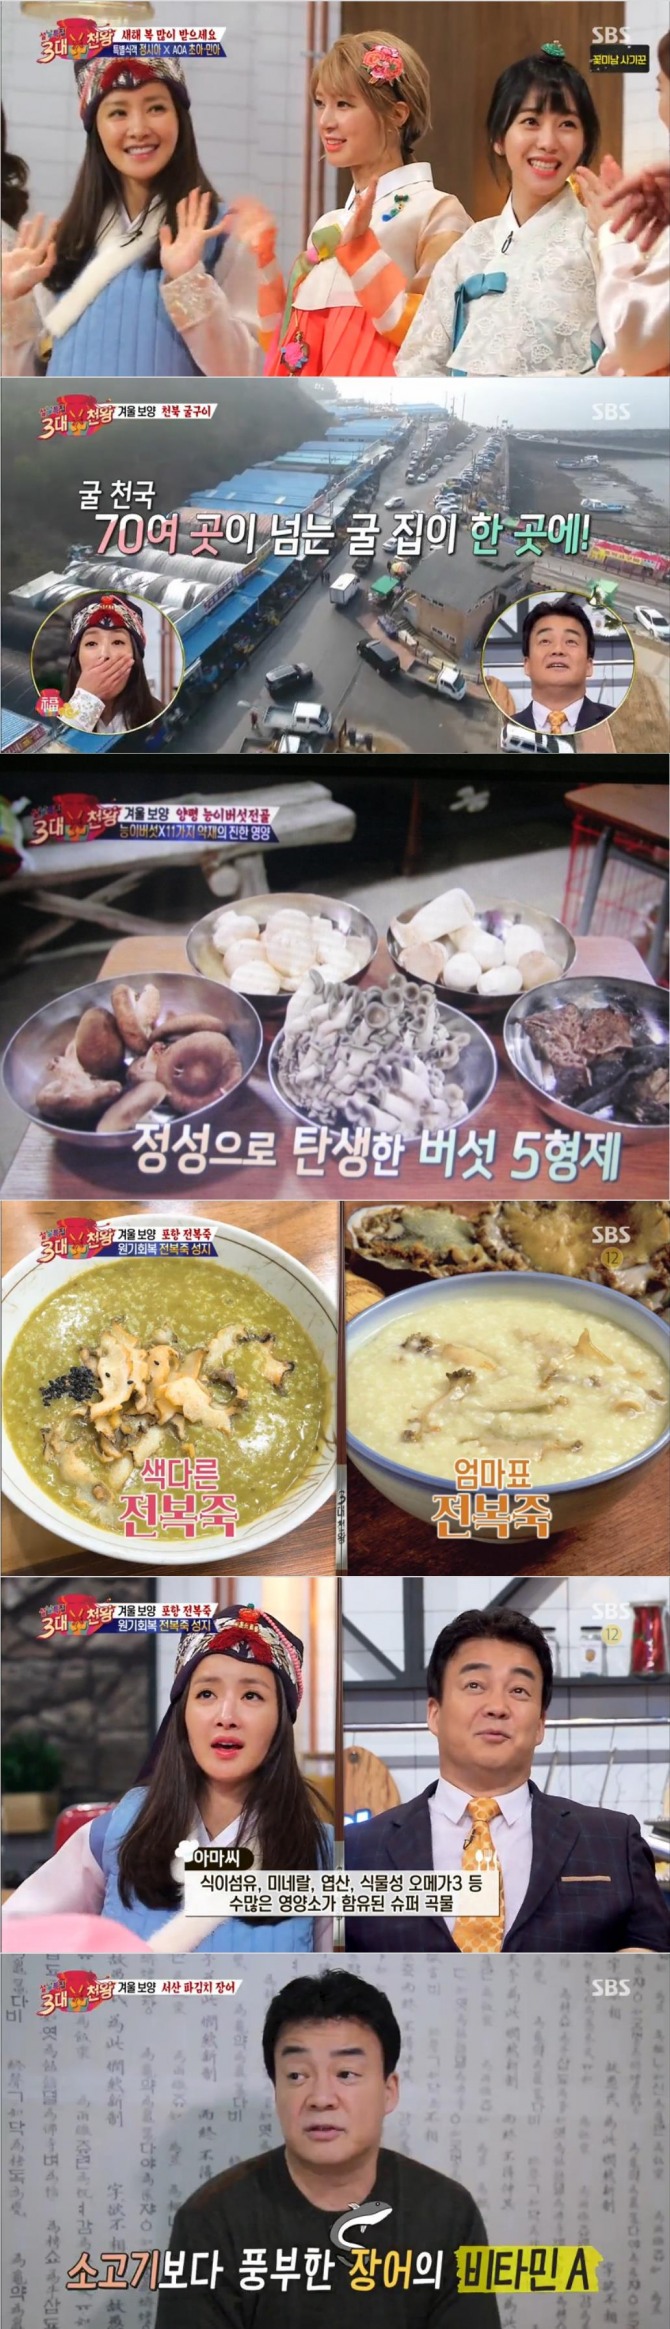 28일 방송된 SBS '백종원의 3대 천왕'에서는 설날 특집으로 겨울 보양 음식이 소개됐다./사진=SBS 방송 캡처